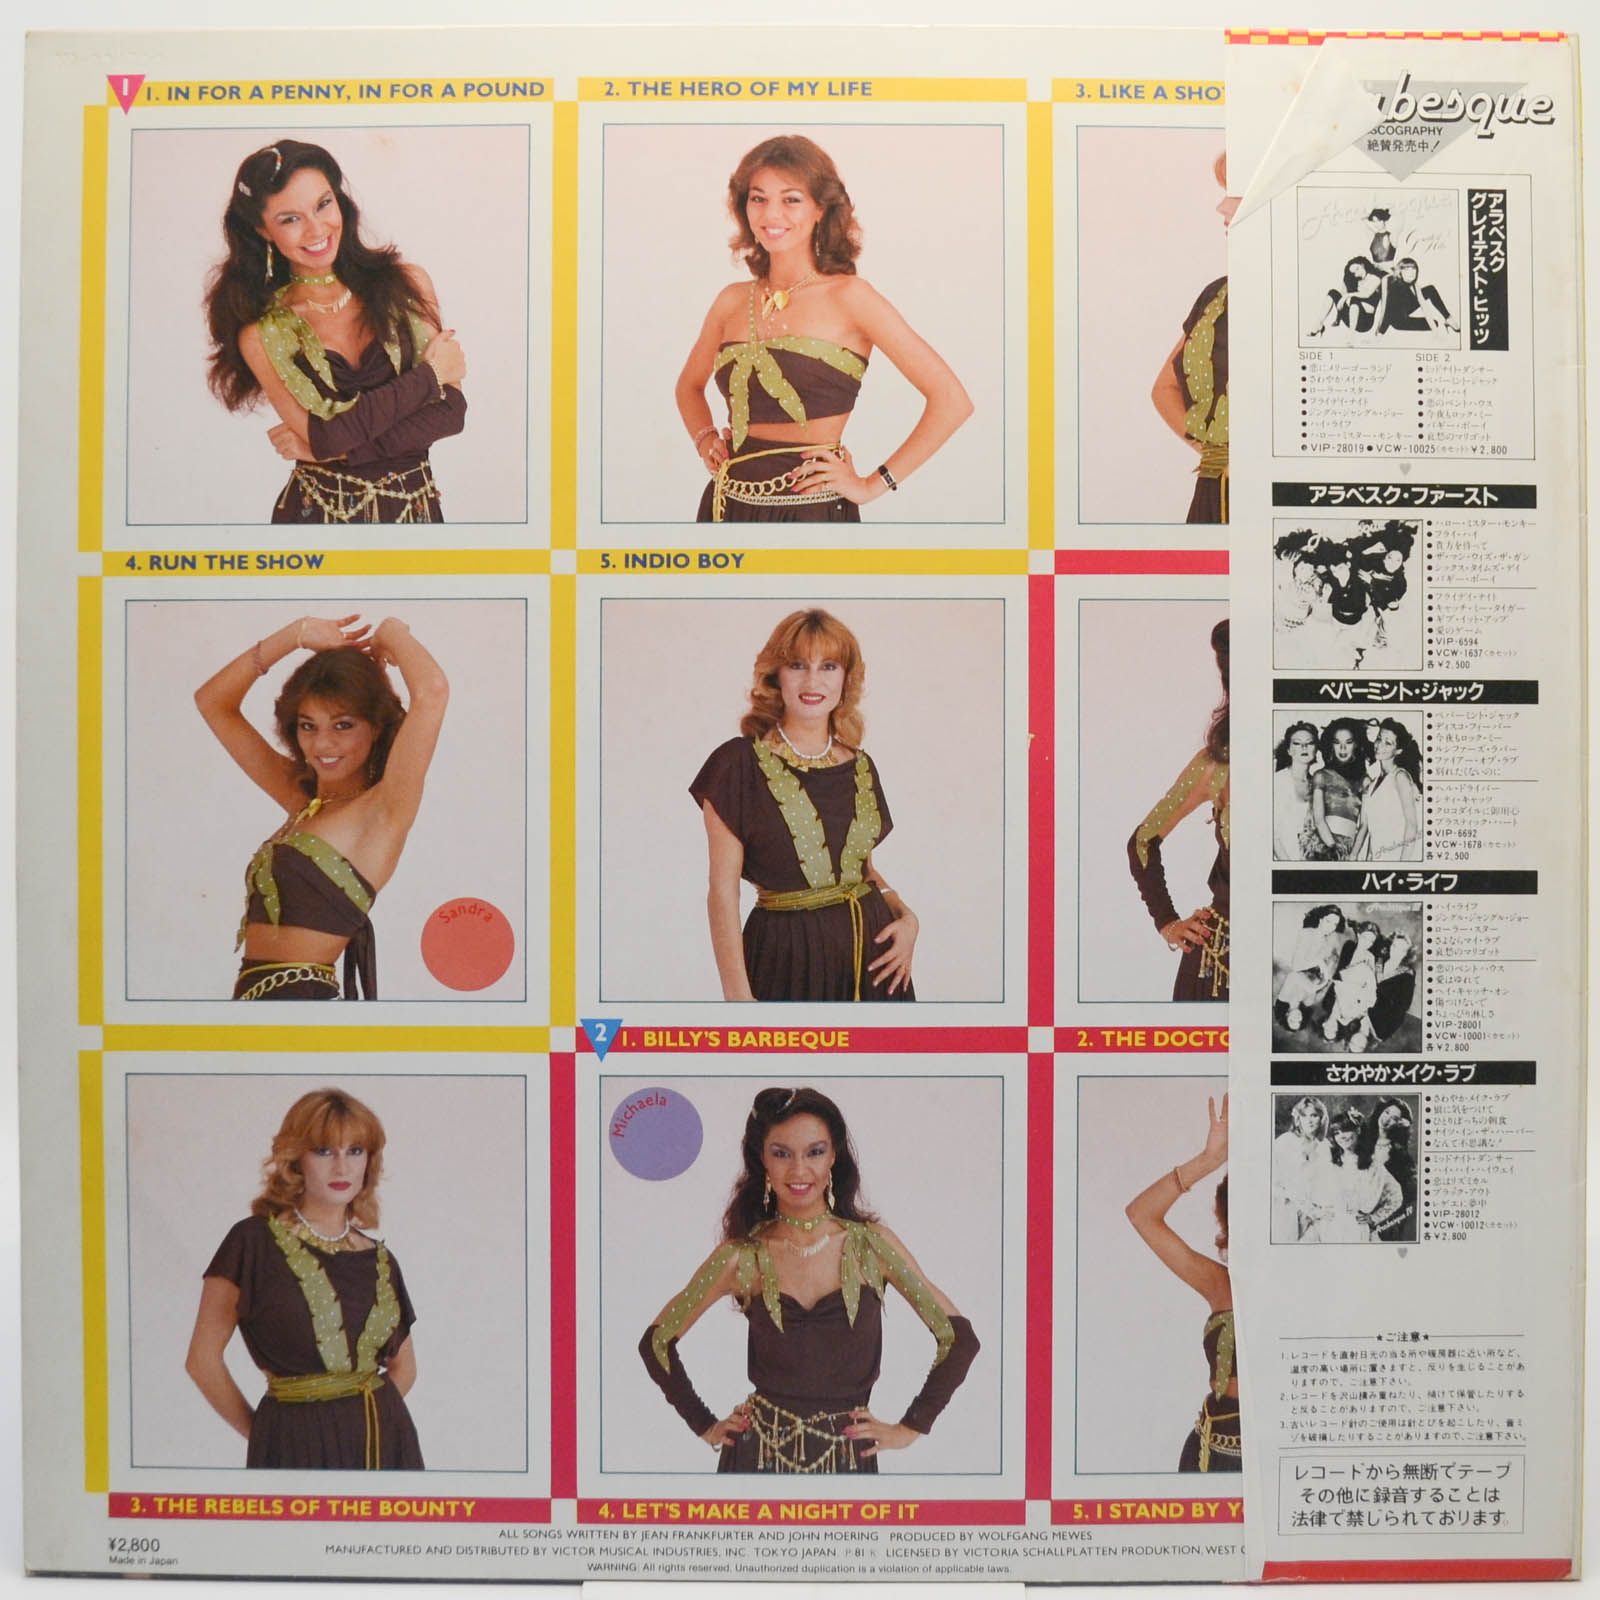 Arabesque — Arabesque V (Billy's Barbeque), 1981